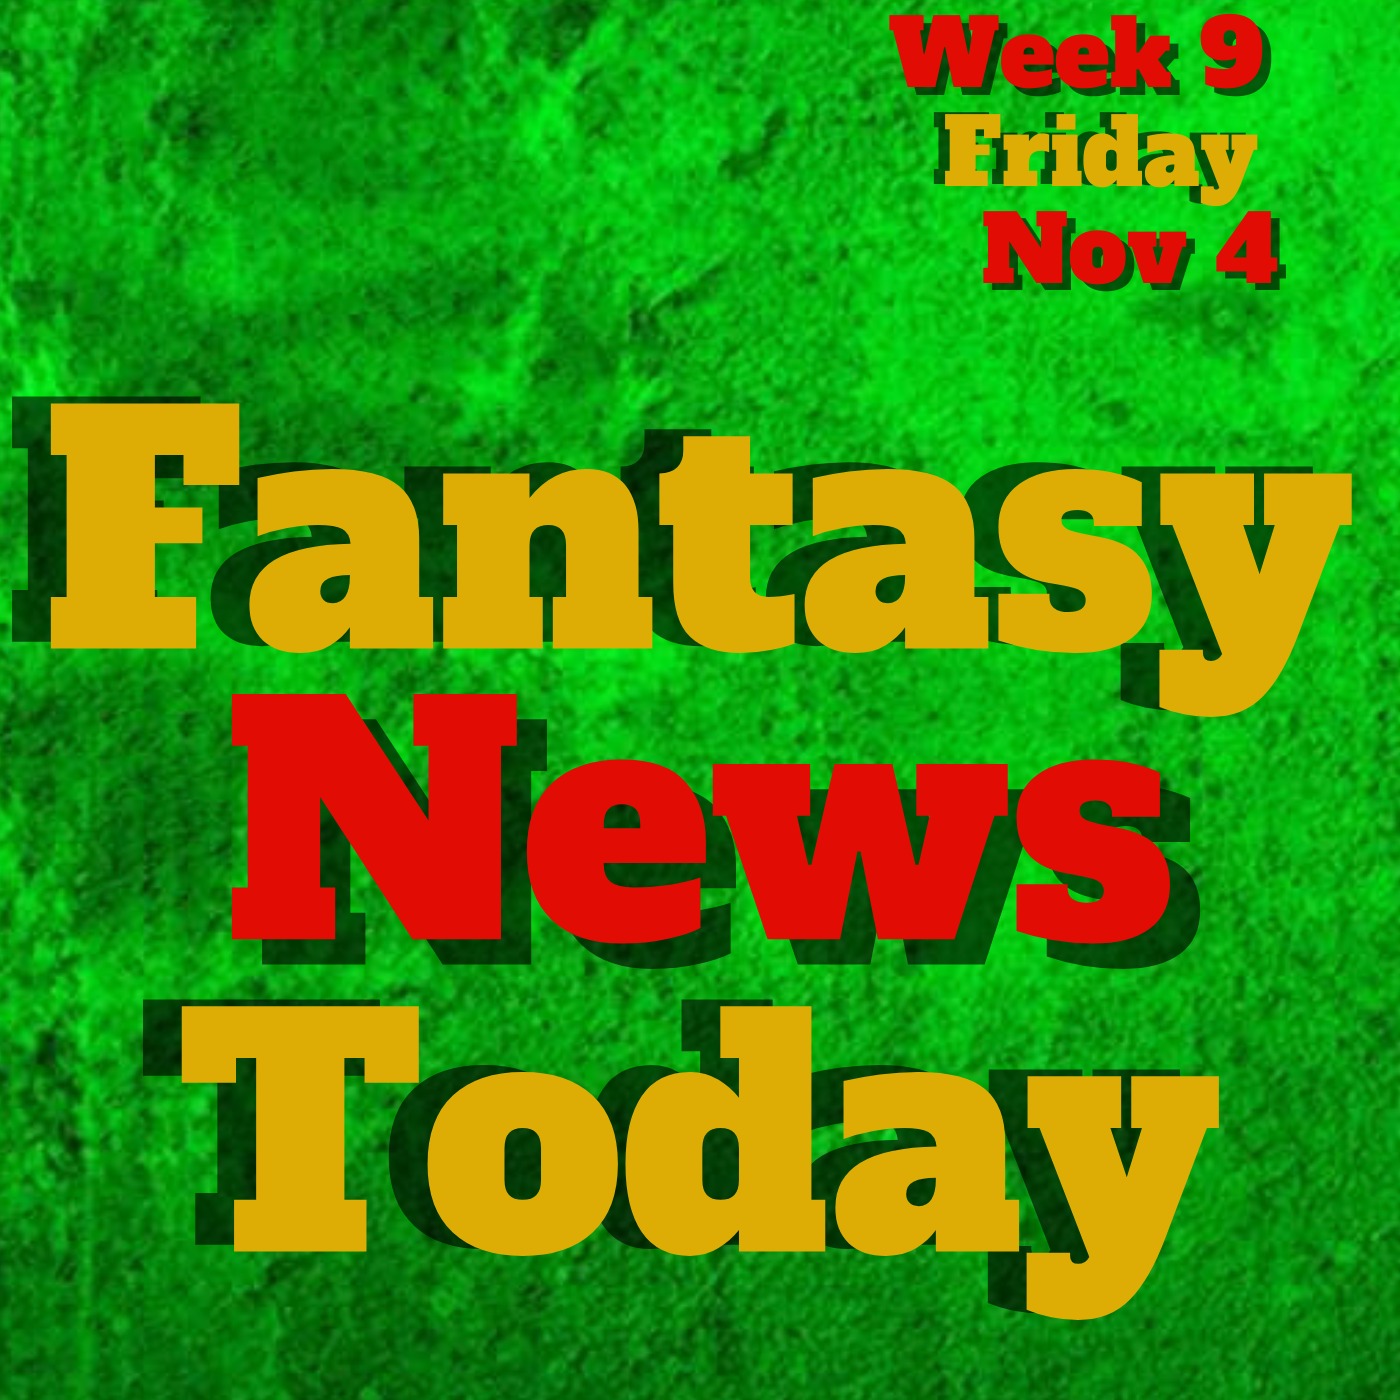 Fantasy Football News Today LIVE | Friday November 4th 2022